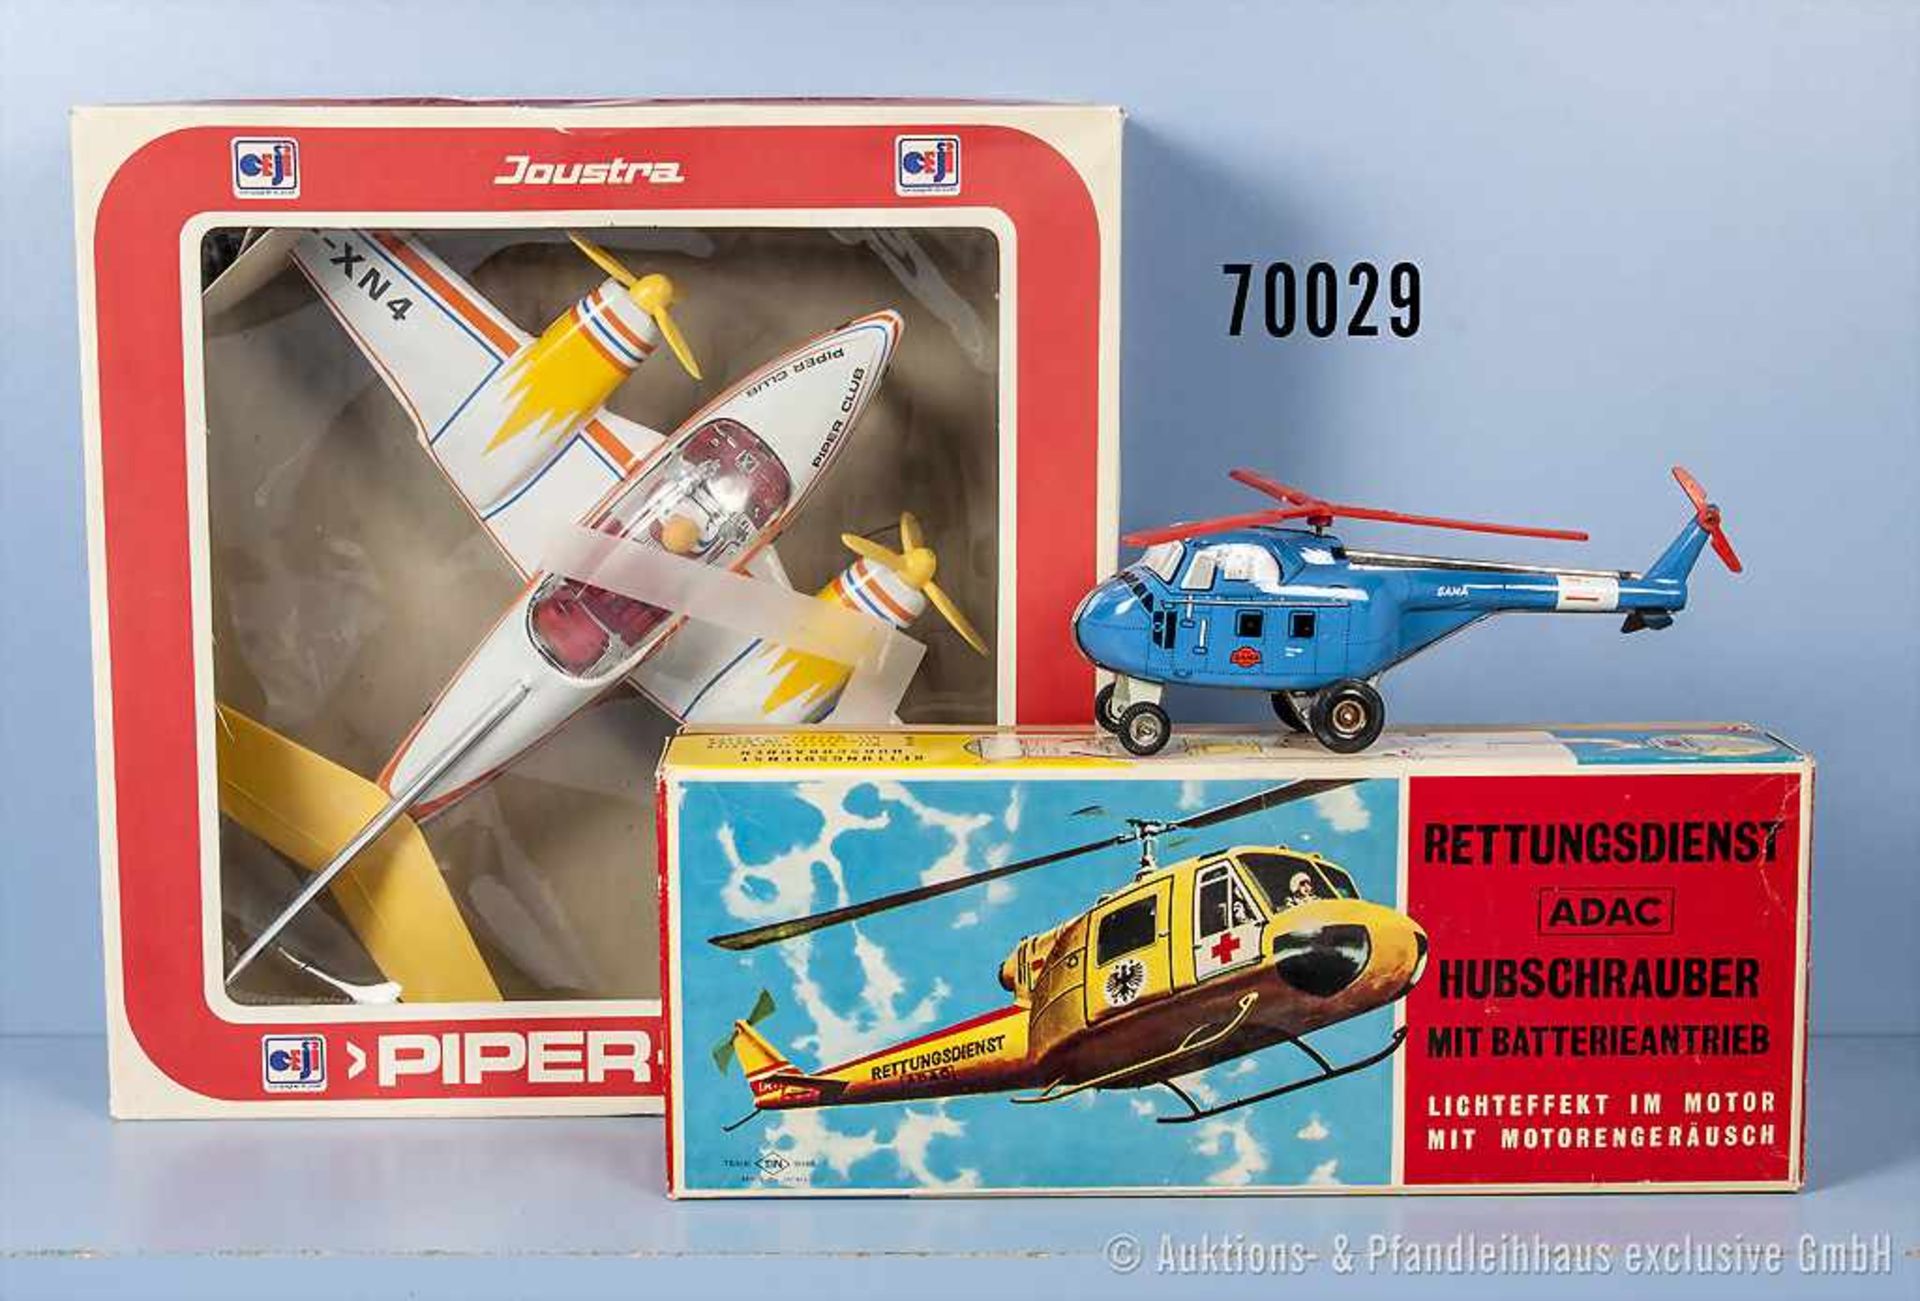 Konv. T. N. Helikopter, Gama Helikopter und Joustra Propeller Flugzeug, Kunststoff- und